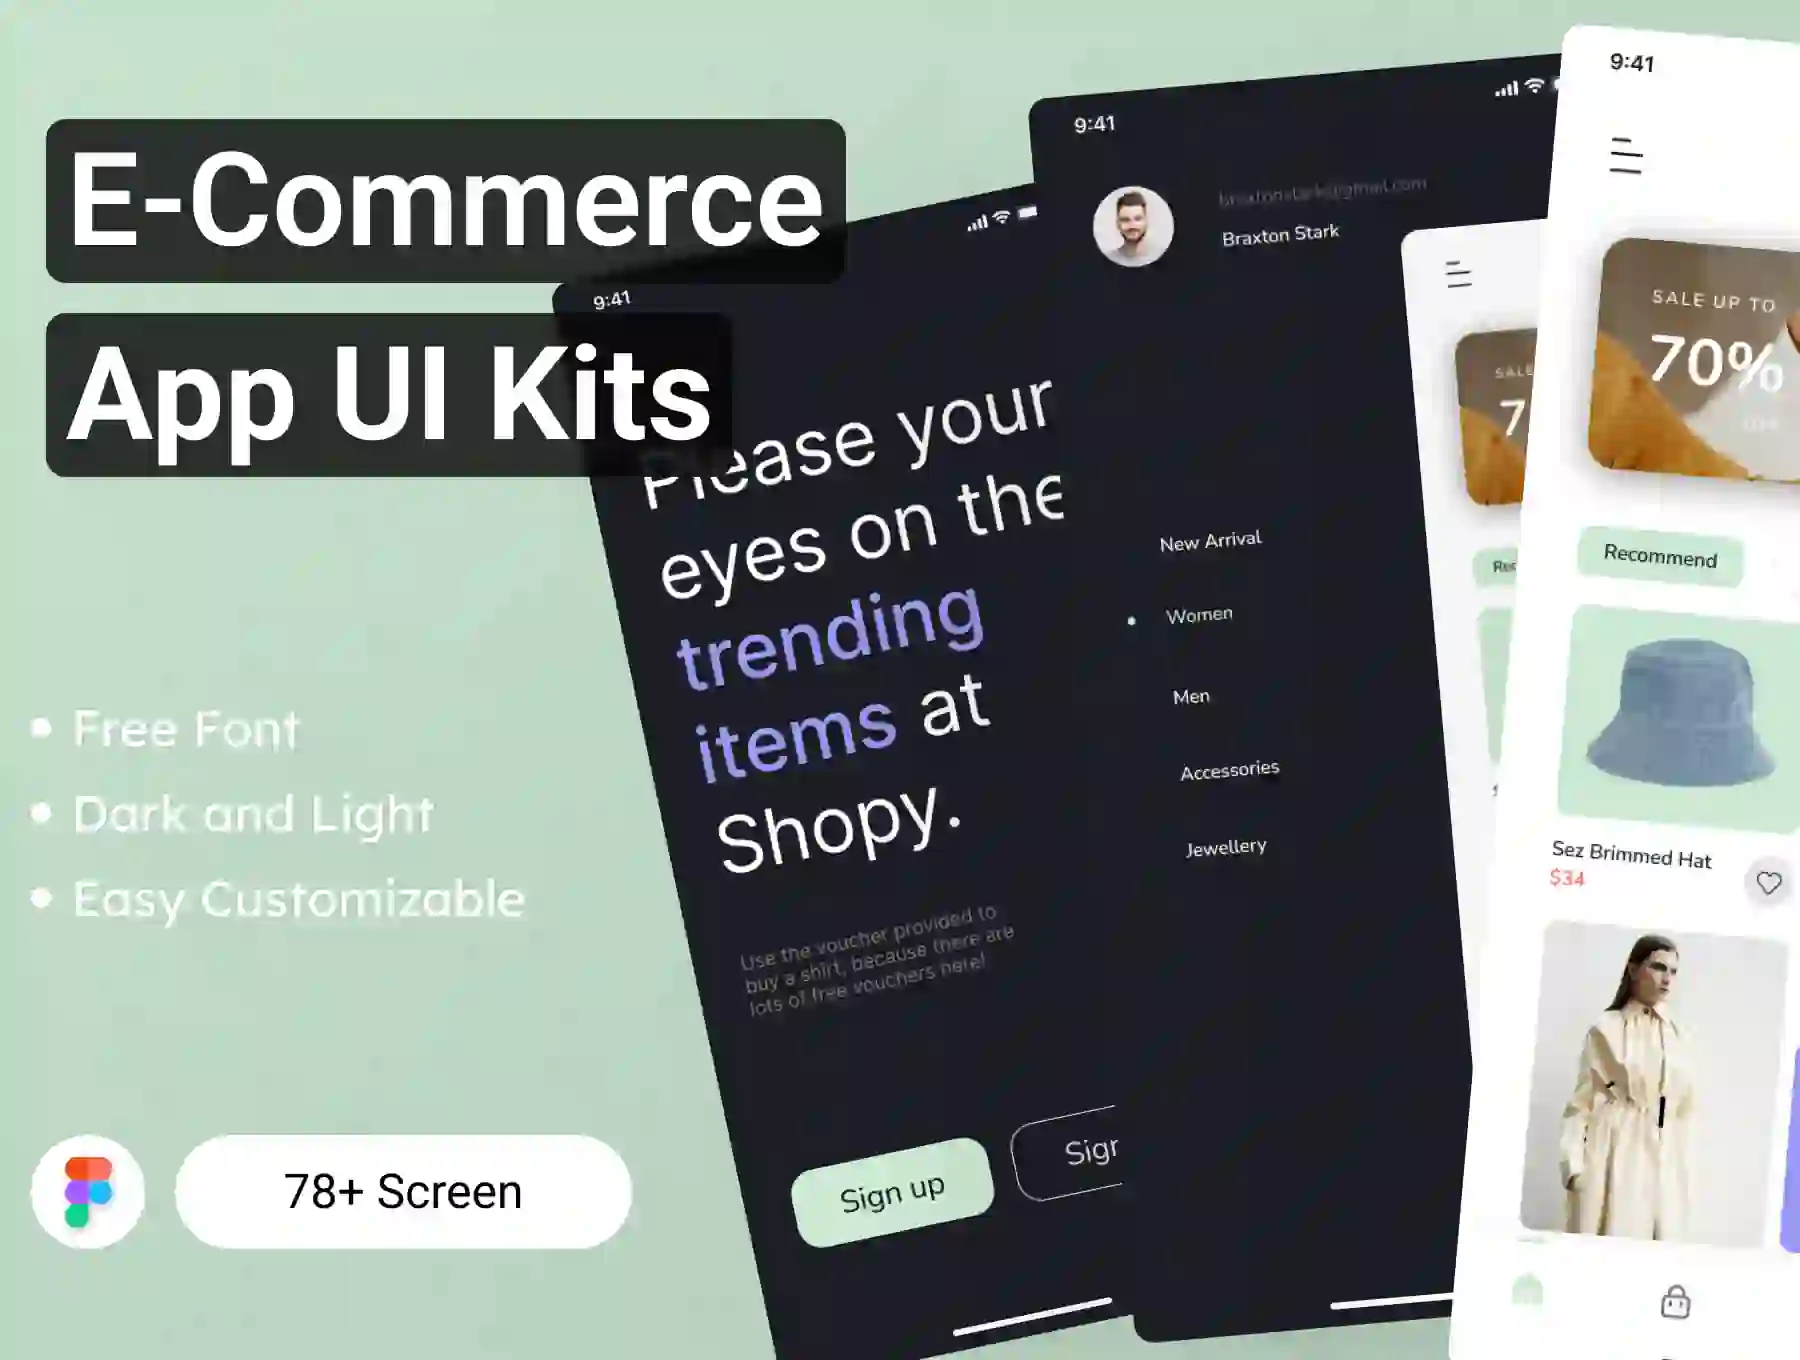 E-Commerce App UI Kits